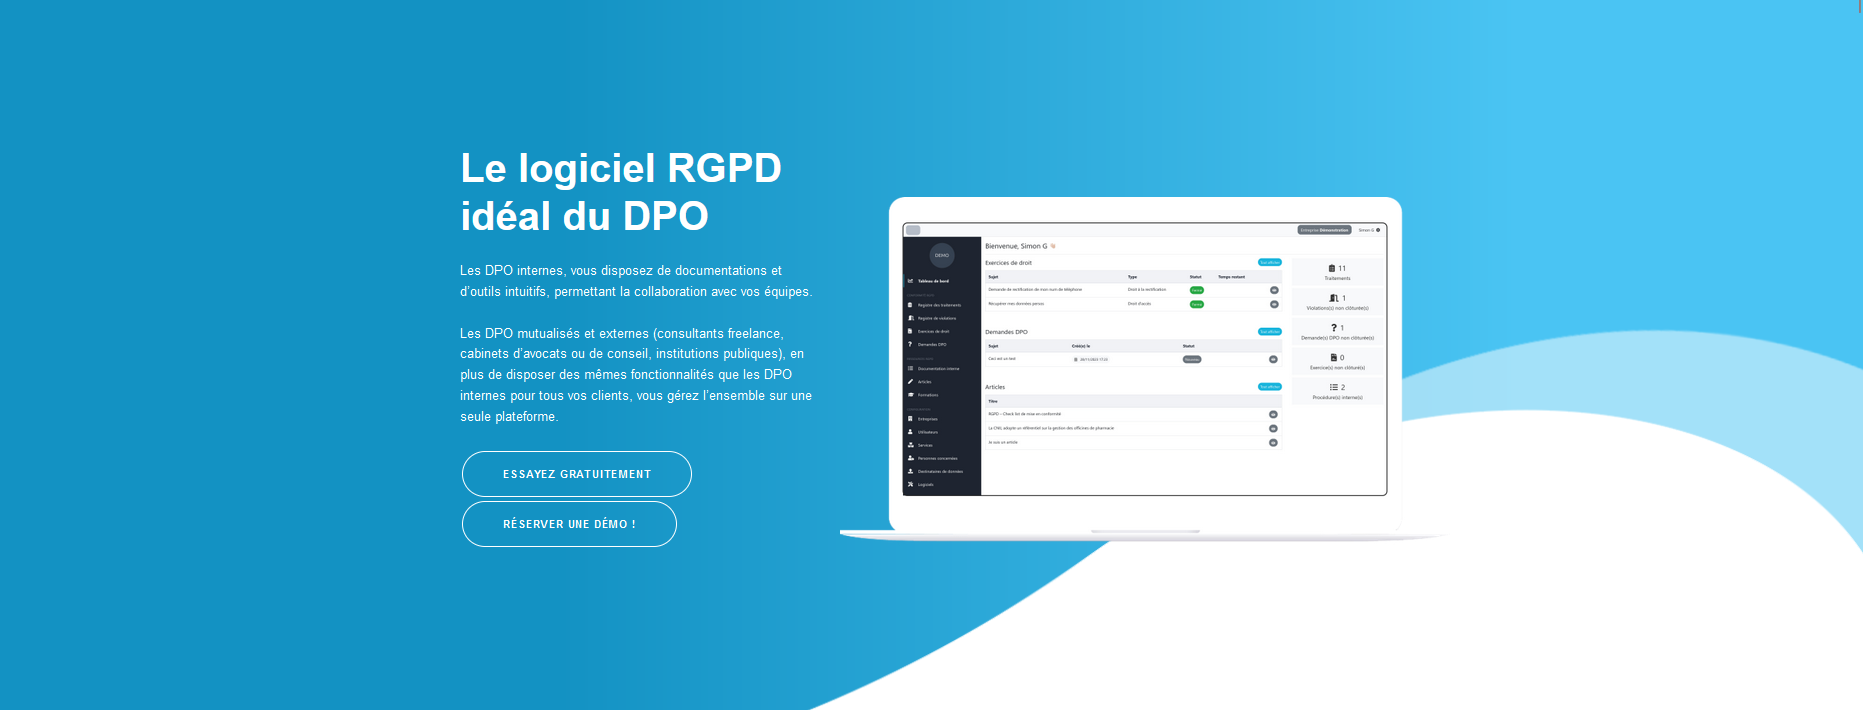 Avis ProDPO : Conformité RGPD et protection des données - Appvizer